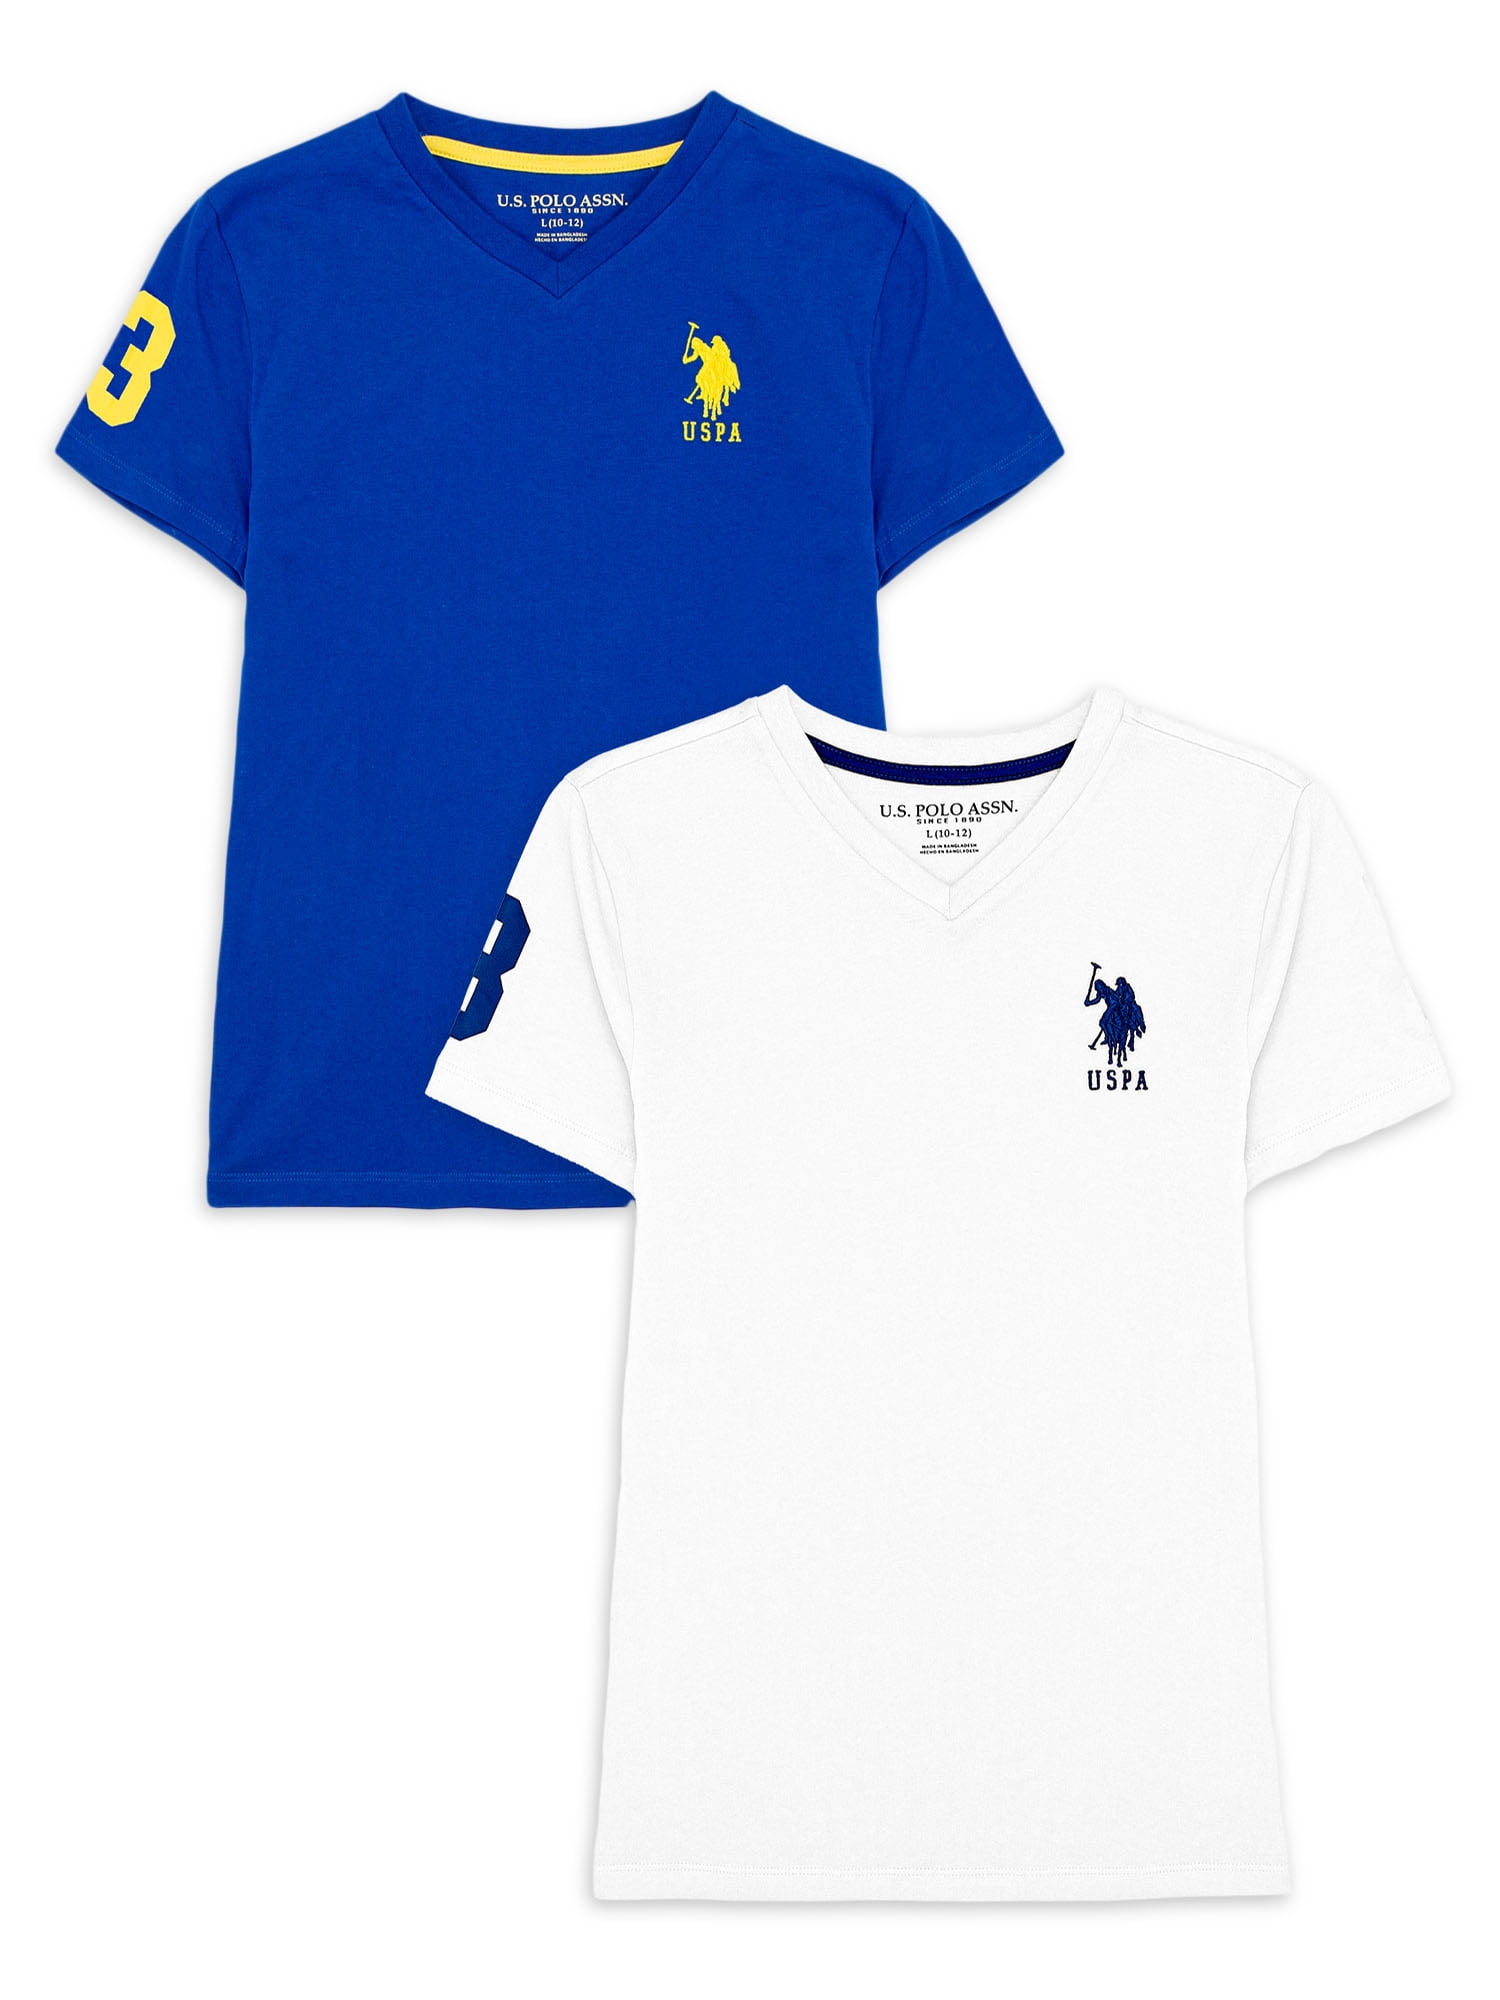 Almindelig komprimeret anspore U.S. Polo Assn. Boys V-neck T-shirt, 2-Pack, Sizes 4-18 - Walmart.com